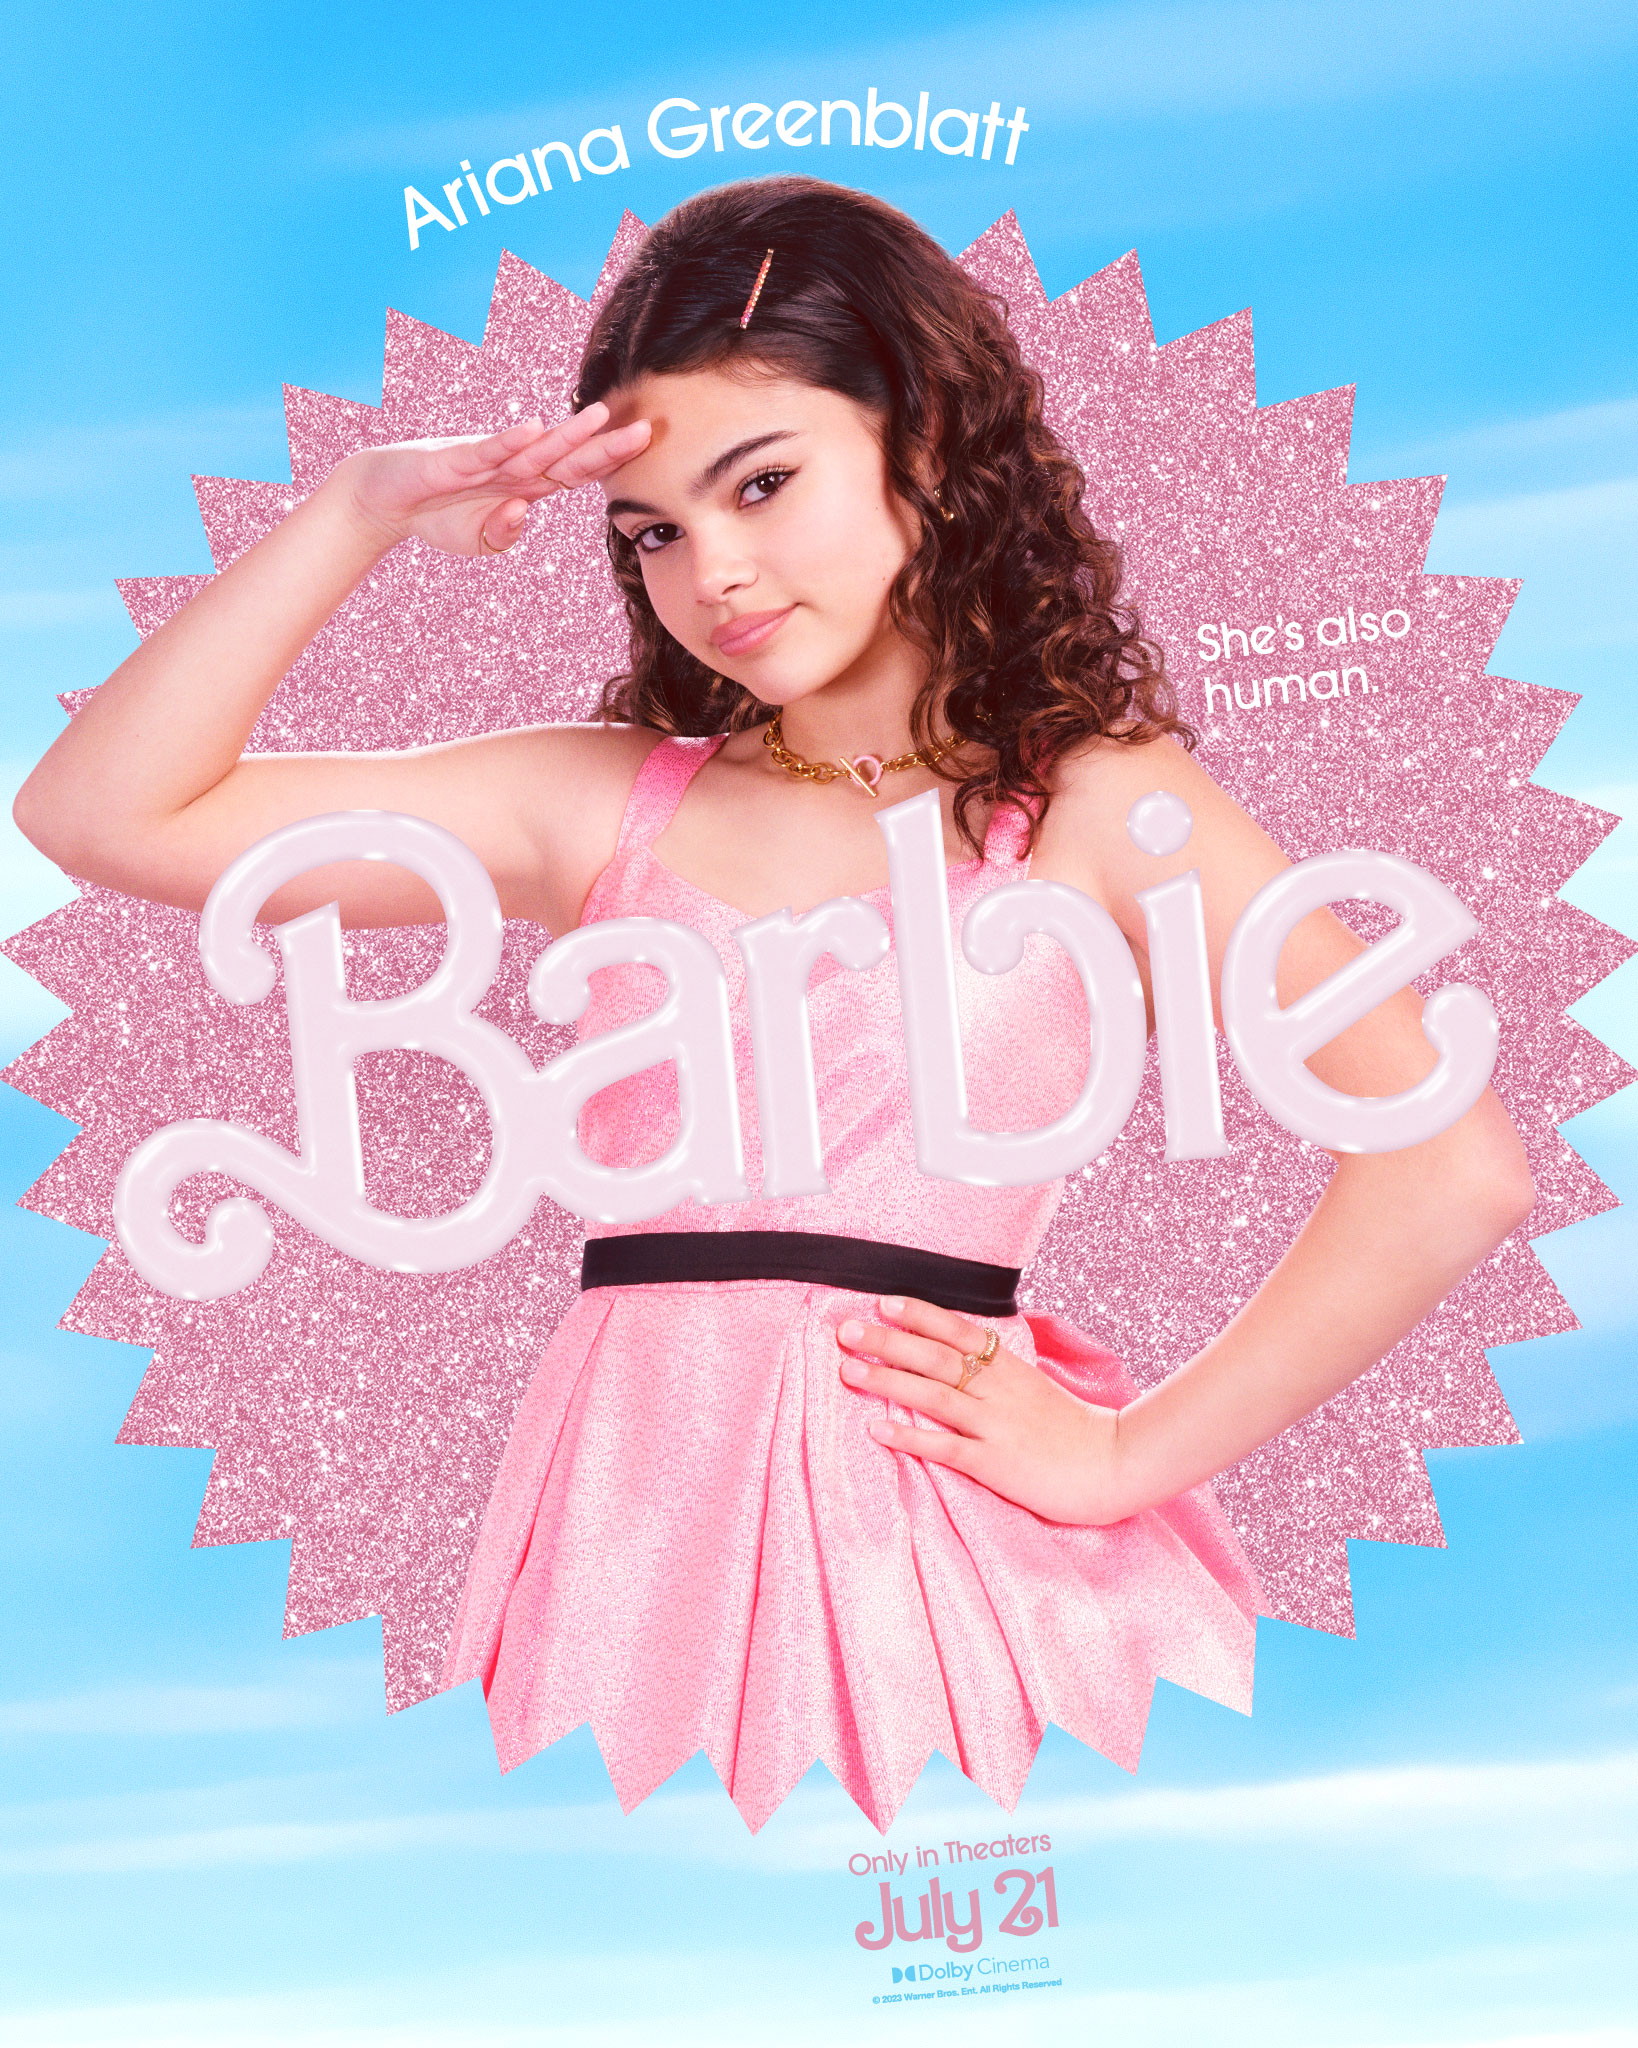 Astro de “Shang-Chi” entra no filme da boneca Barbie - Pipoca Moderna